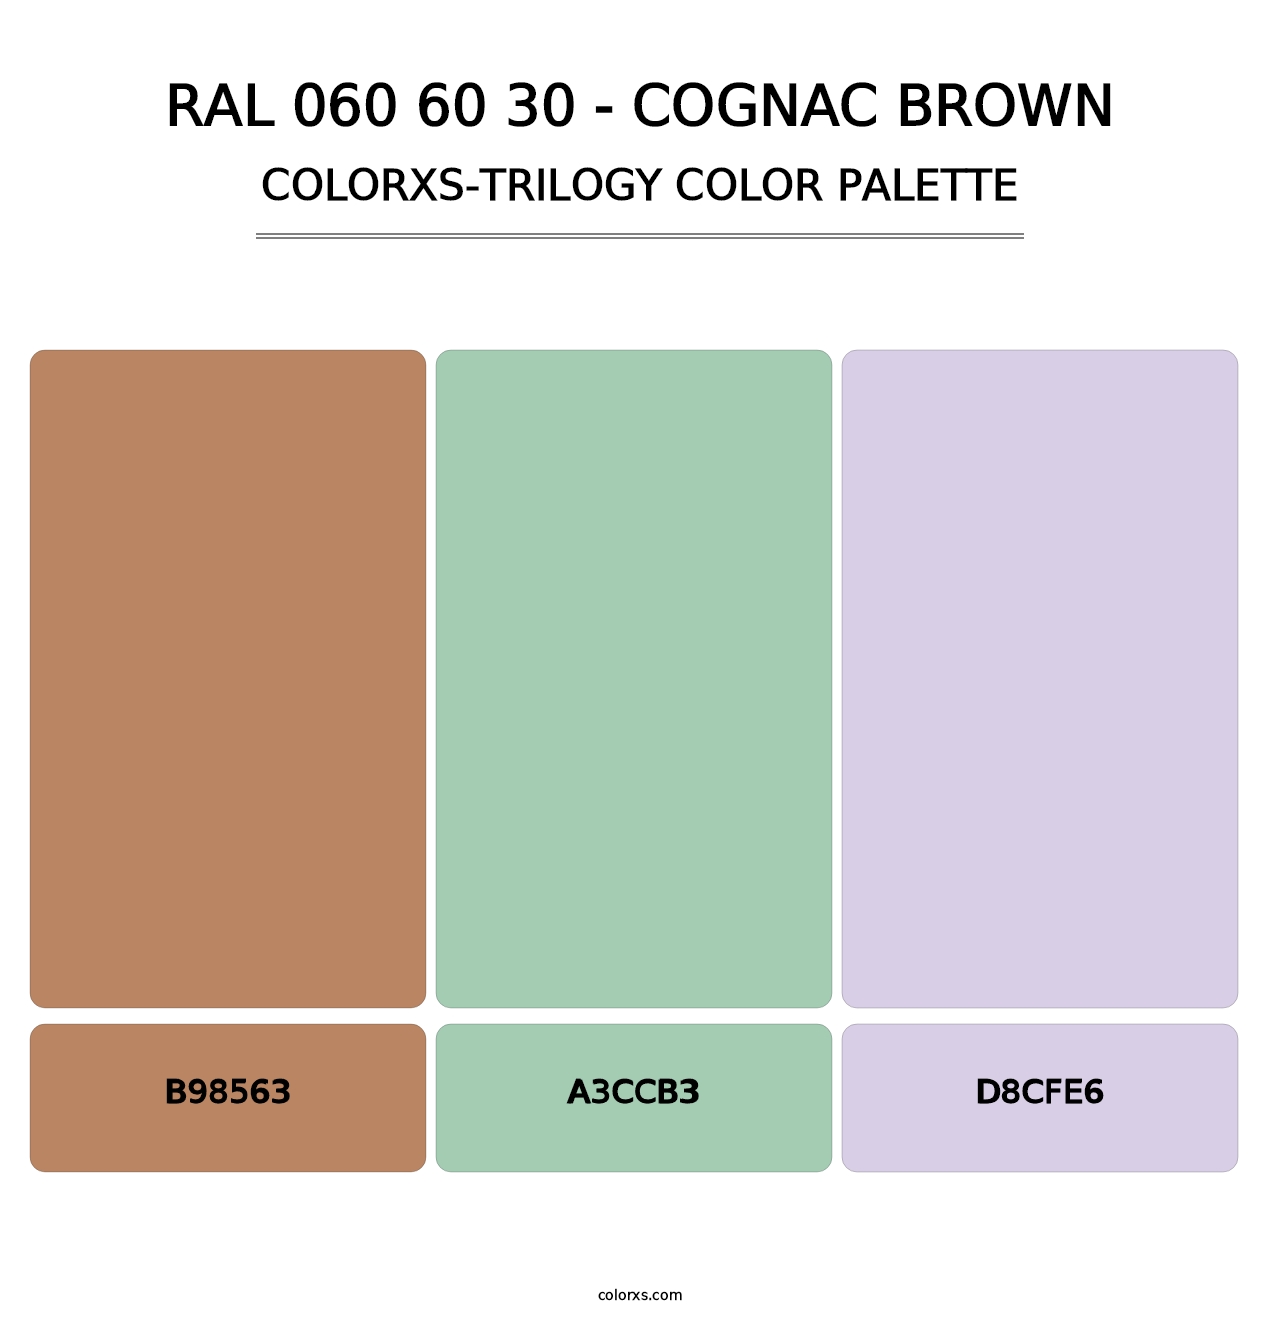 RAL 060 60 30 - Cognac Brown - Colorxs Trilogy Palette